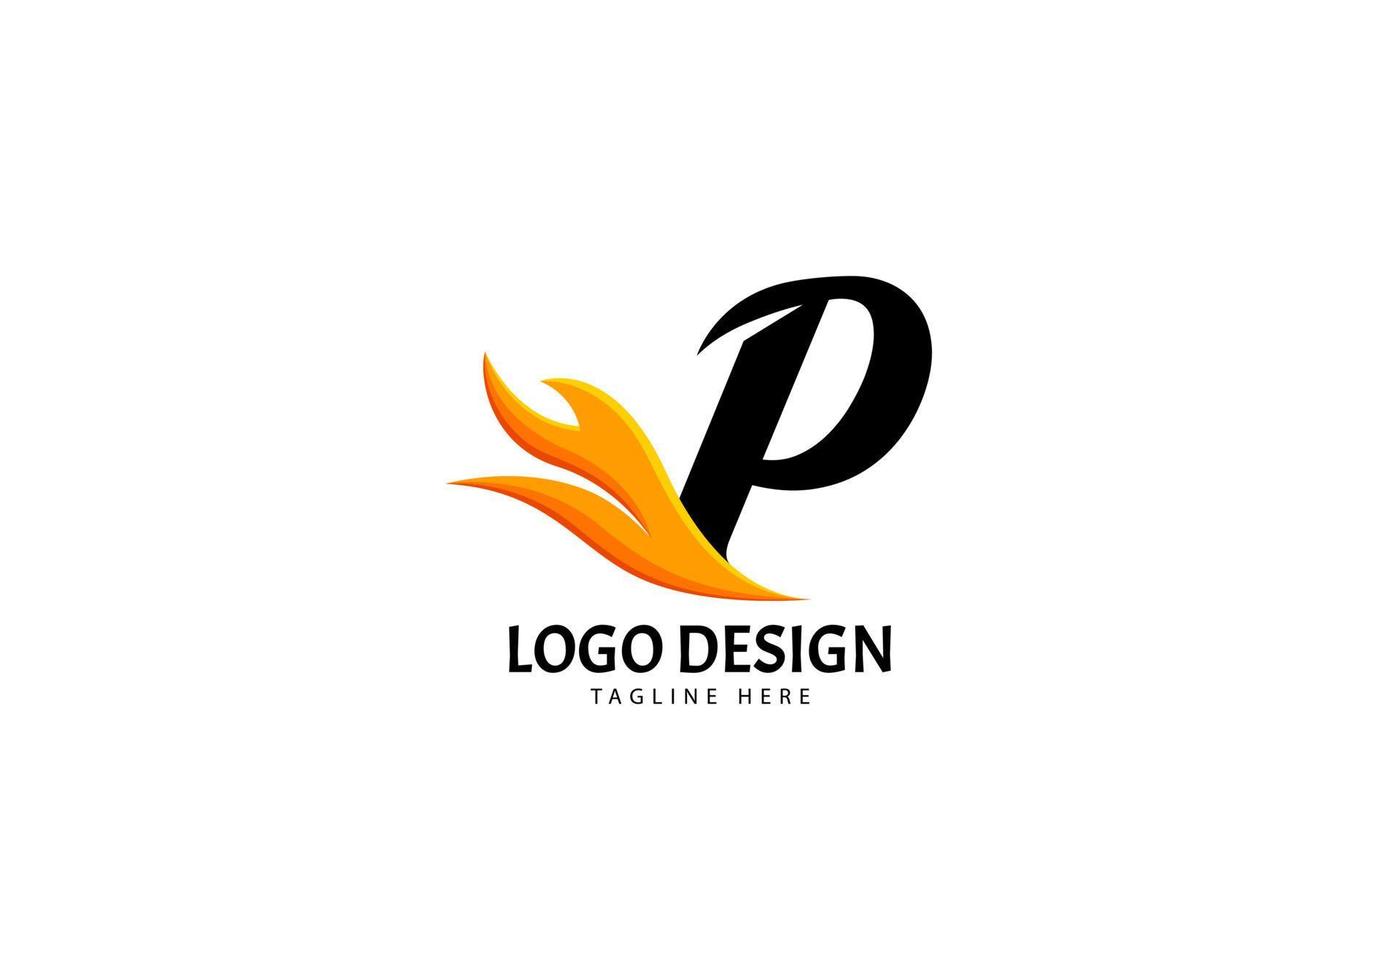 logotipo de letra p fire para marca o empresa, concepto minimalista. vector